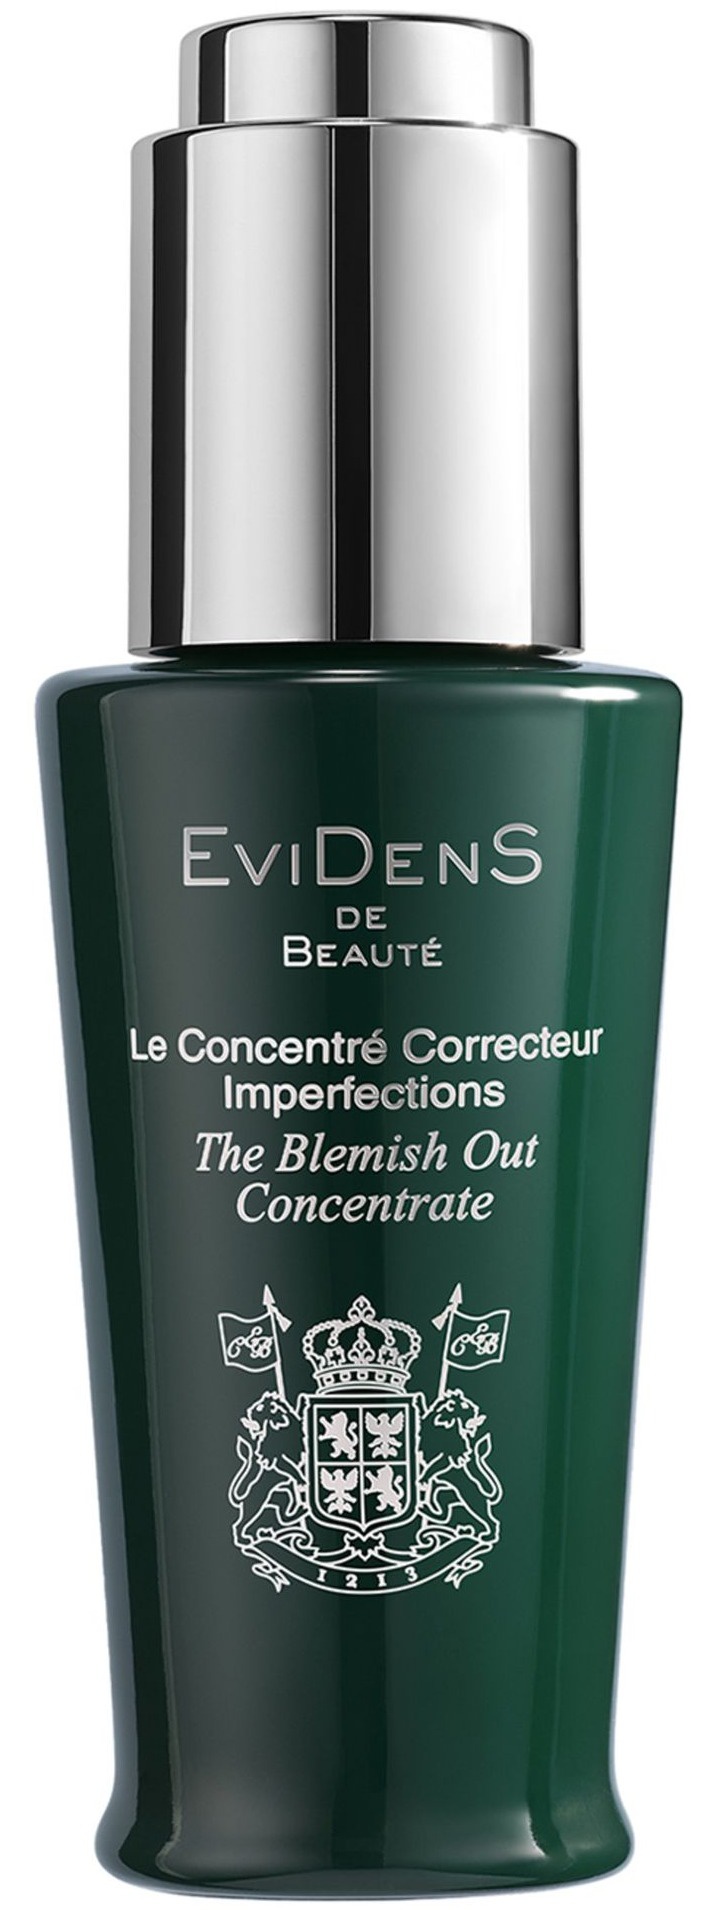 Evidens De Beauté The Blemish Out Concentrate